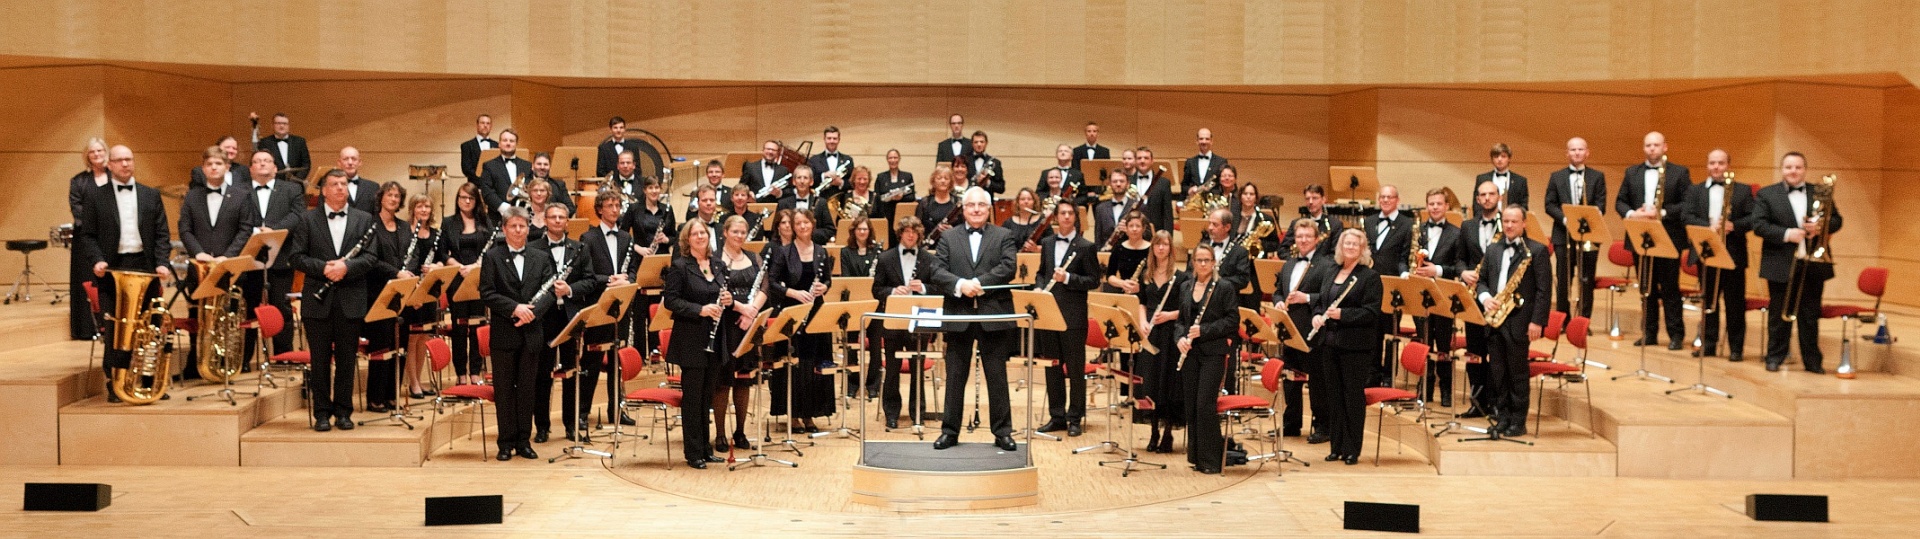 Landesblasorchester Nordrhein-Westfalen · Philharmonie Essen